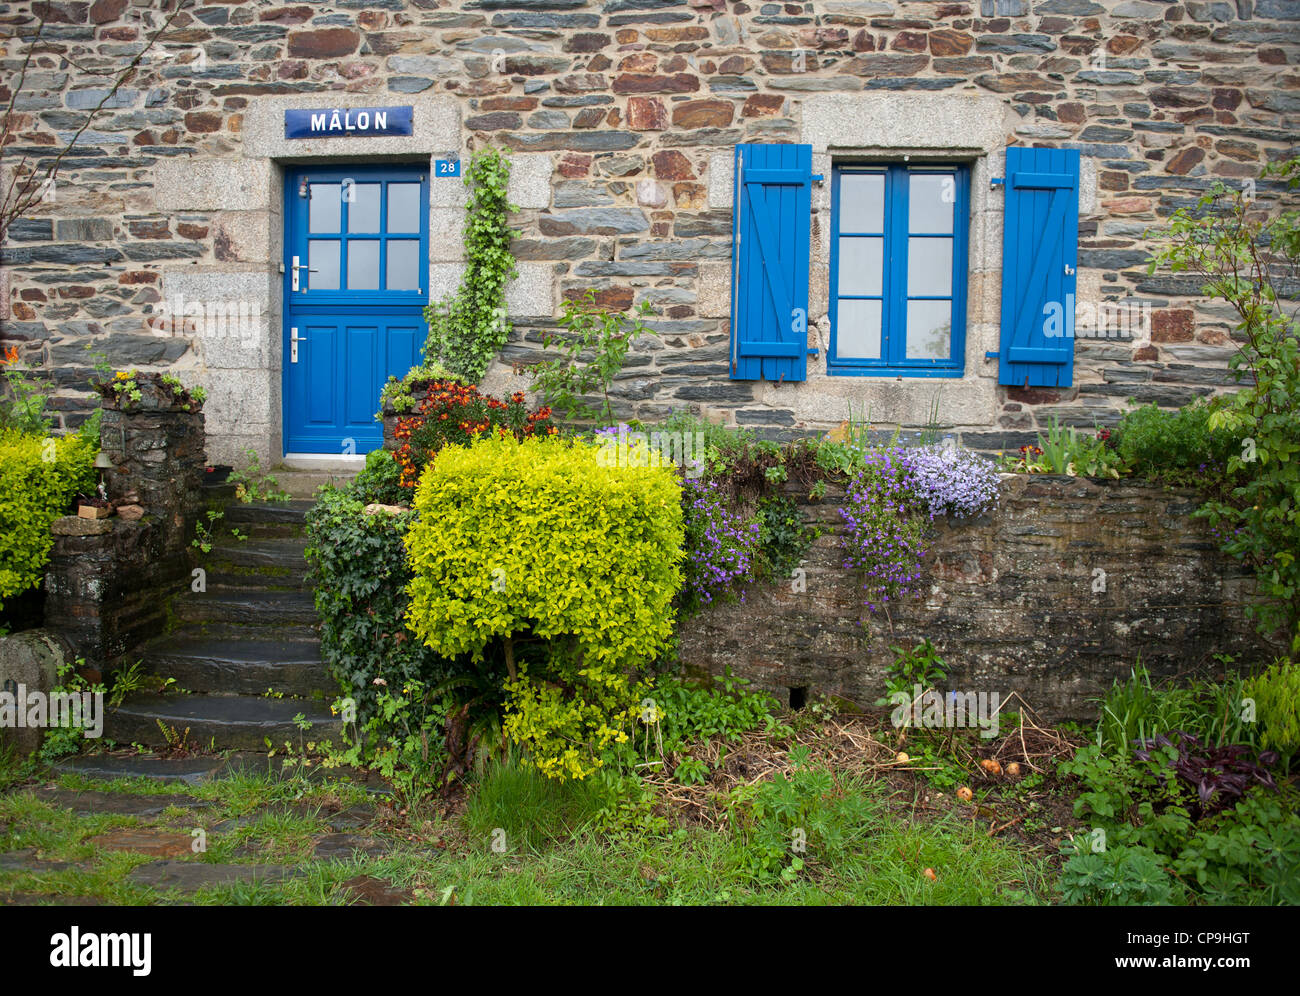 Maison traditionnelle en pierre de l'écluse de Mâlon gardien sur la vilaine en Bretagne, France Banque D'Images